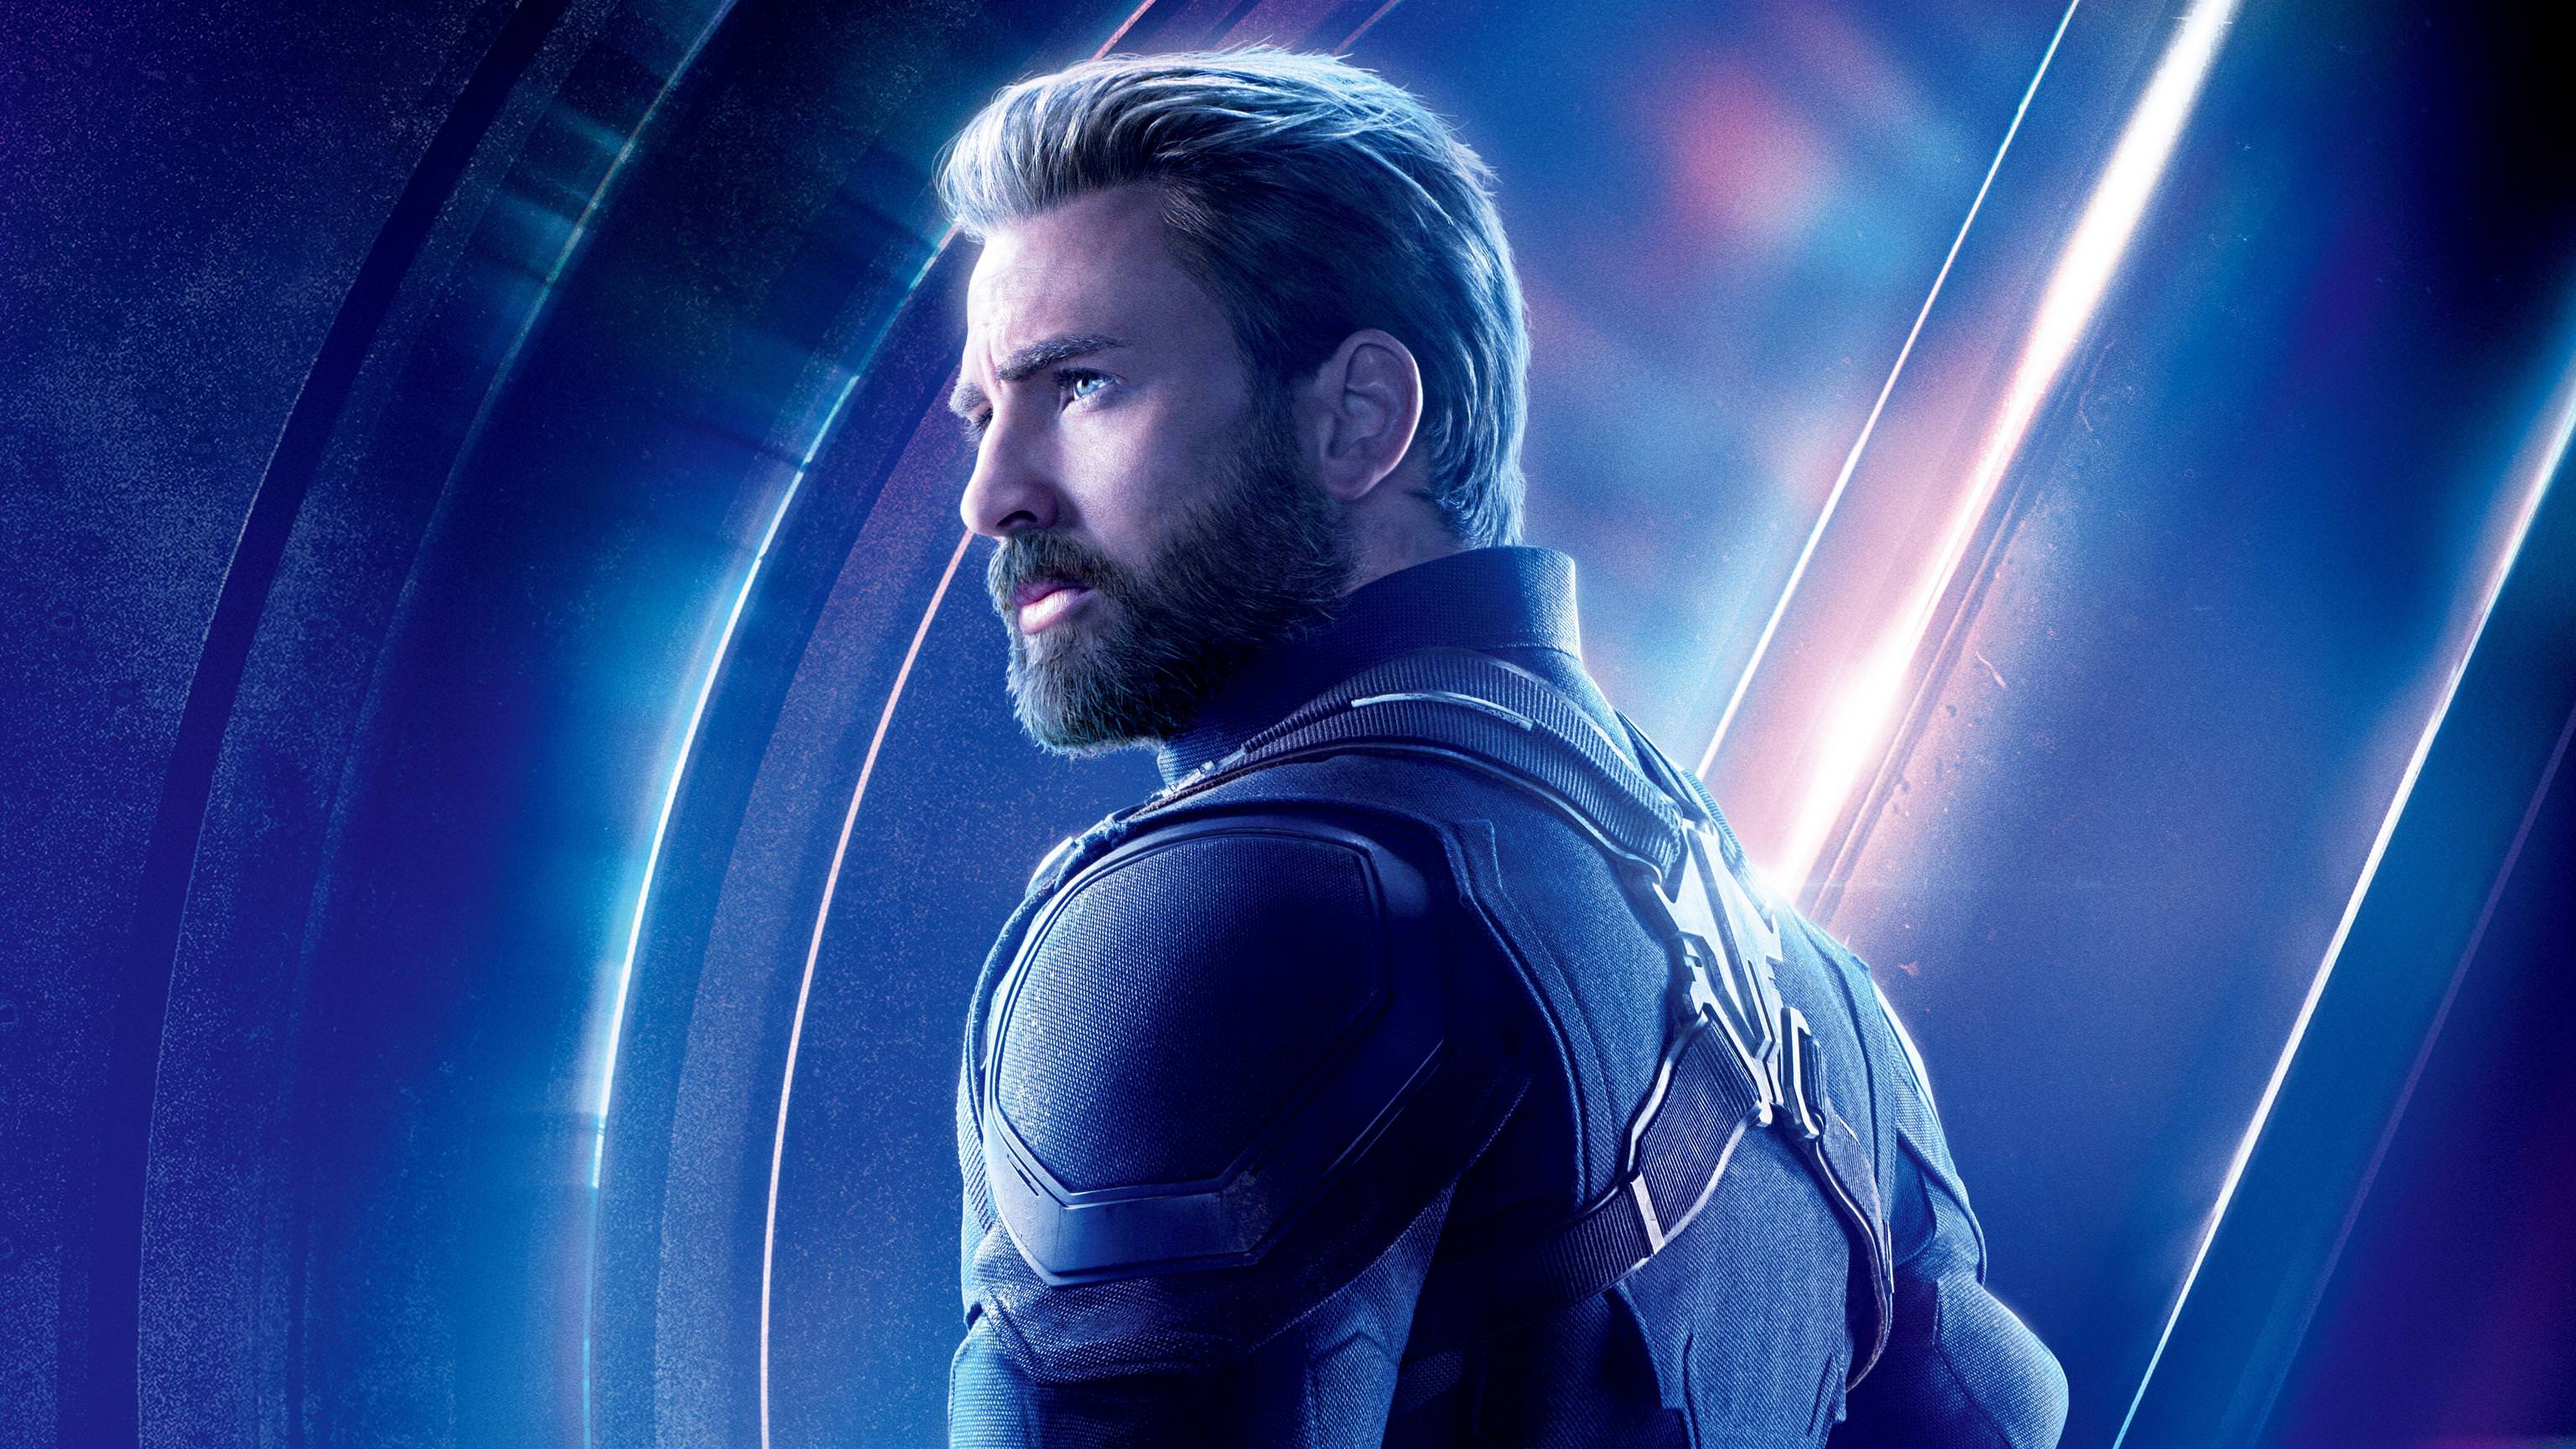 Chris Evans as Captain America Avengers Infinity War 4K 8K